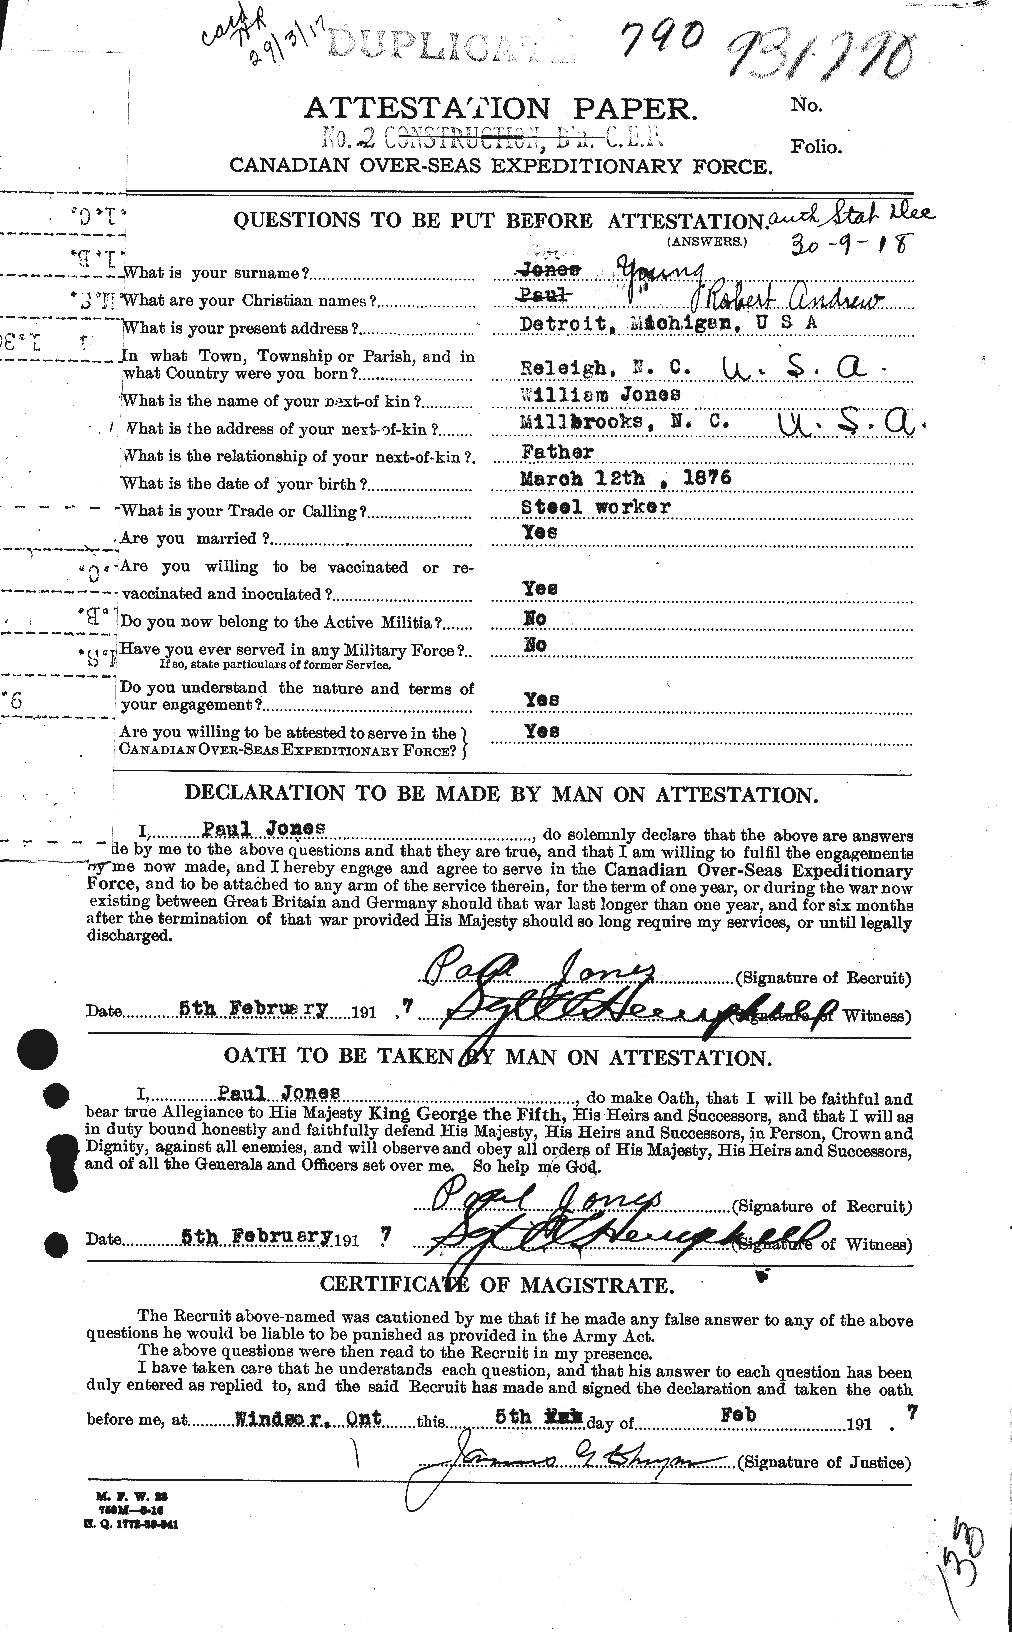 Dossiers du Personnel de la Première Guerre mondiale - CEC 692166a